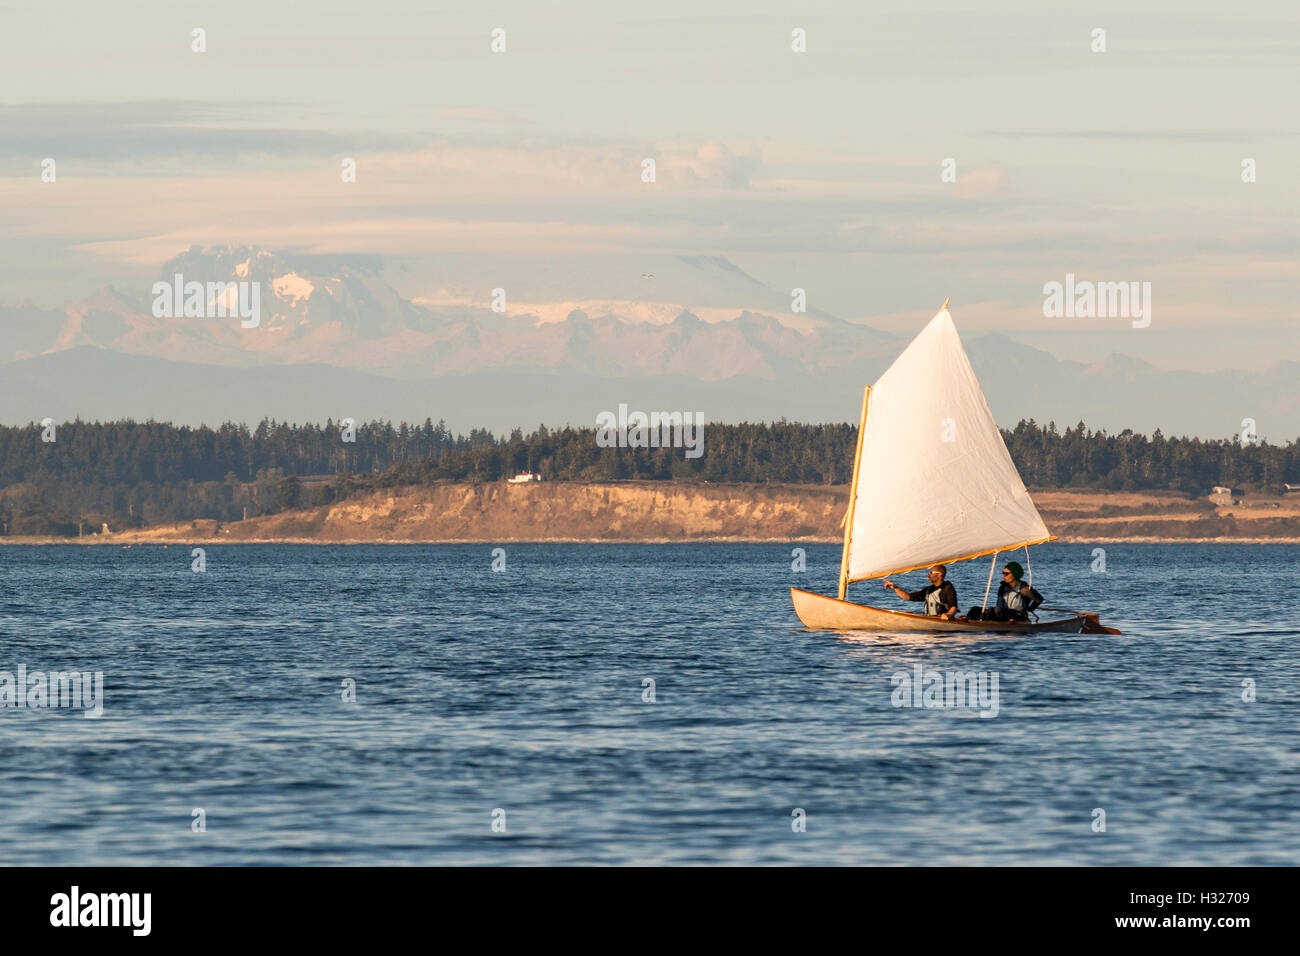 Segelboot segeln, Holzboot, mit Sprit Rig Segeln auf Port Townsend Bucht, Puget Sound mit Mount Baker im Hintergrund. Stockfoto